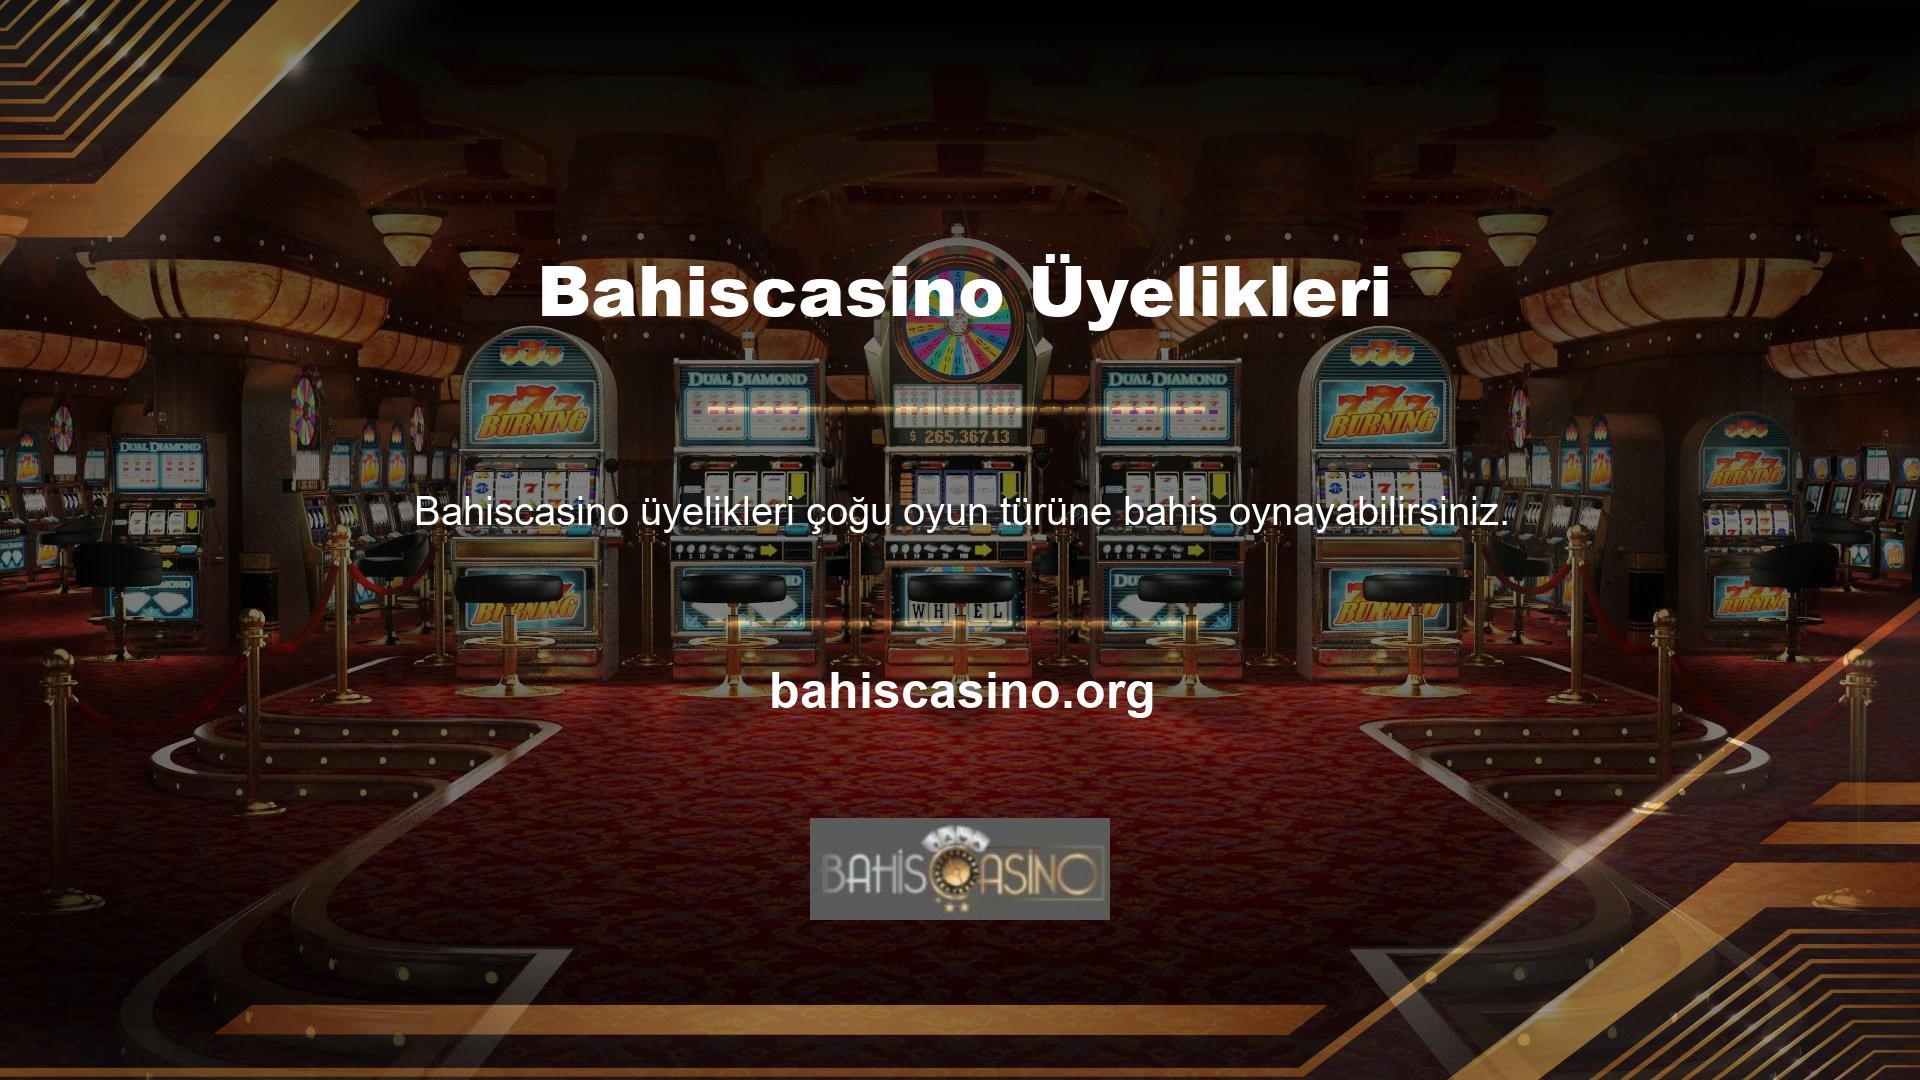 Bir Casinoda veya spor bahis ortamında canlı veya sanal bahis oynamanız için çok sayıda fırsat vardır